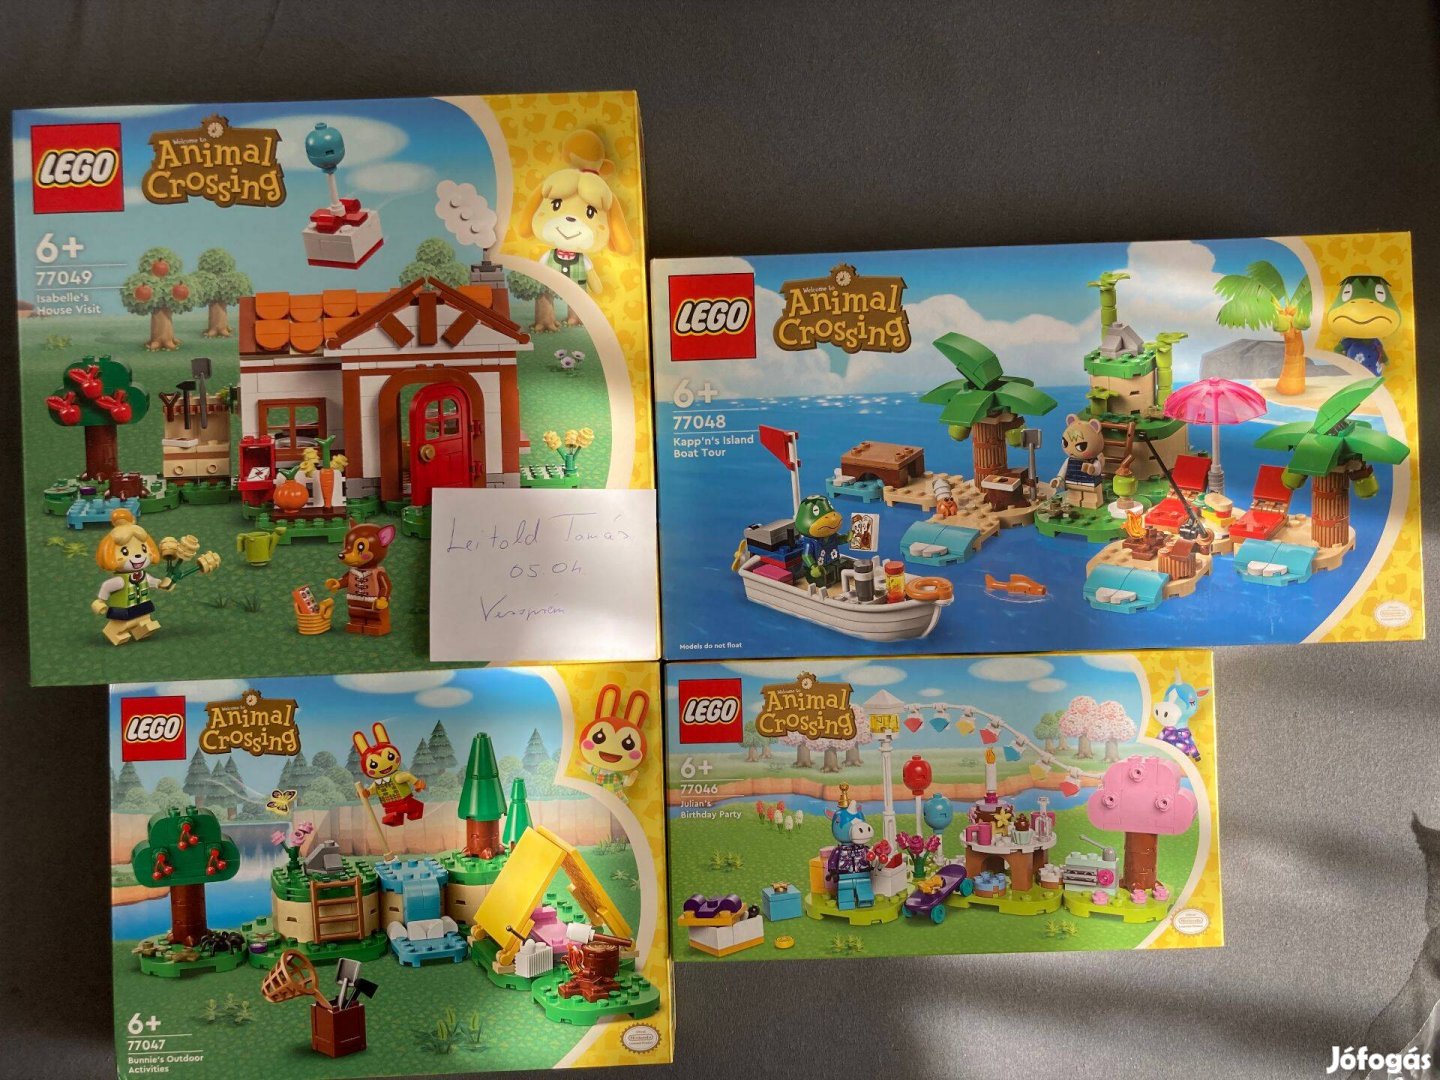 4 db LEGO Animal Crossing készlet